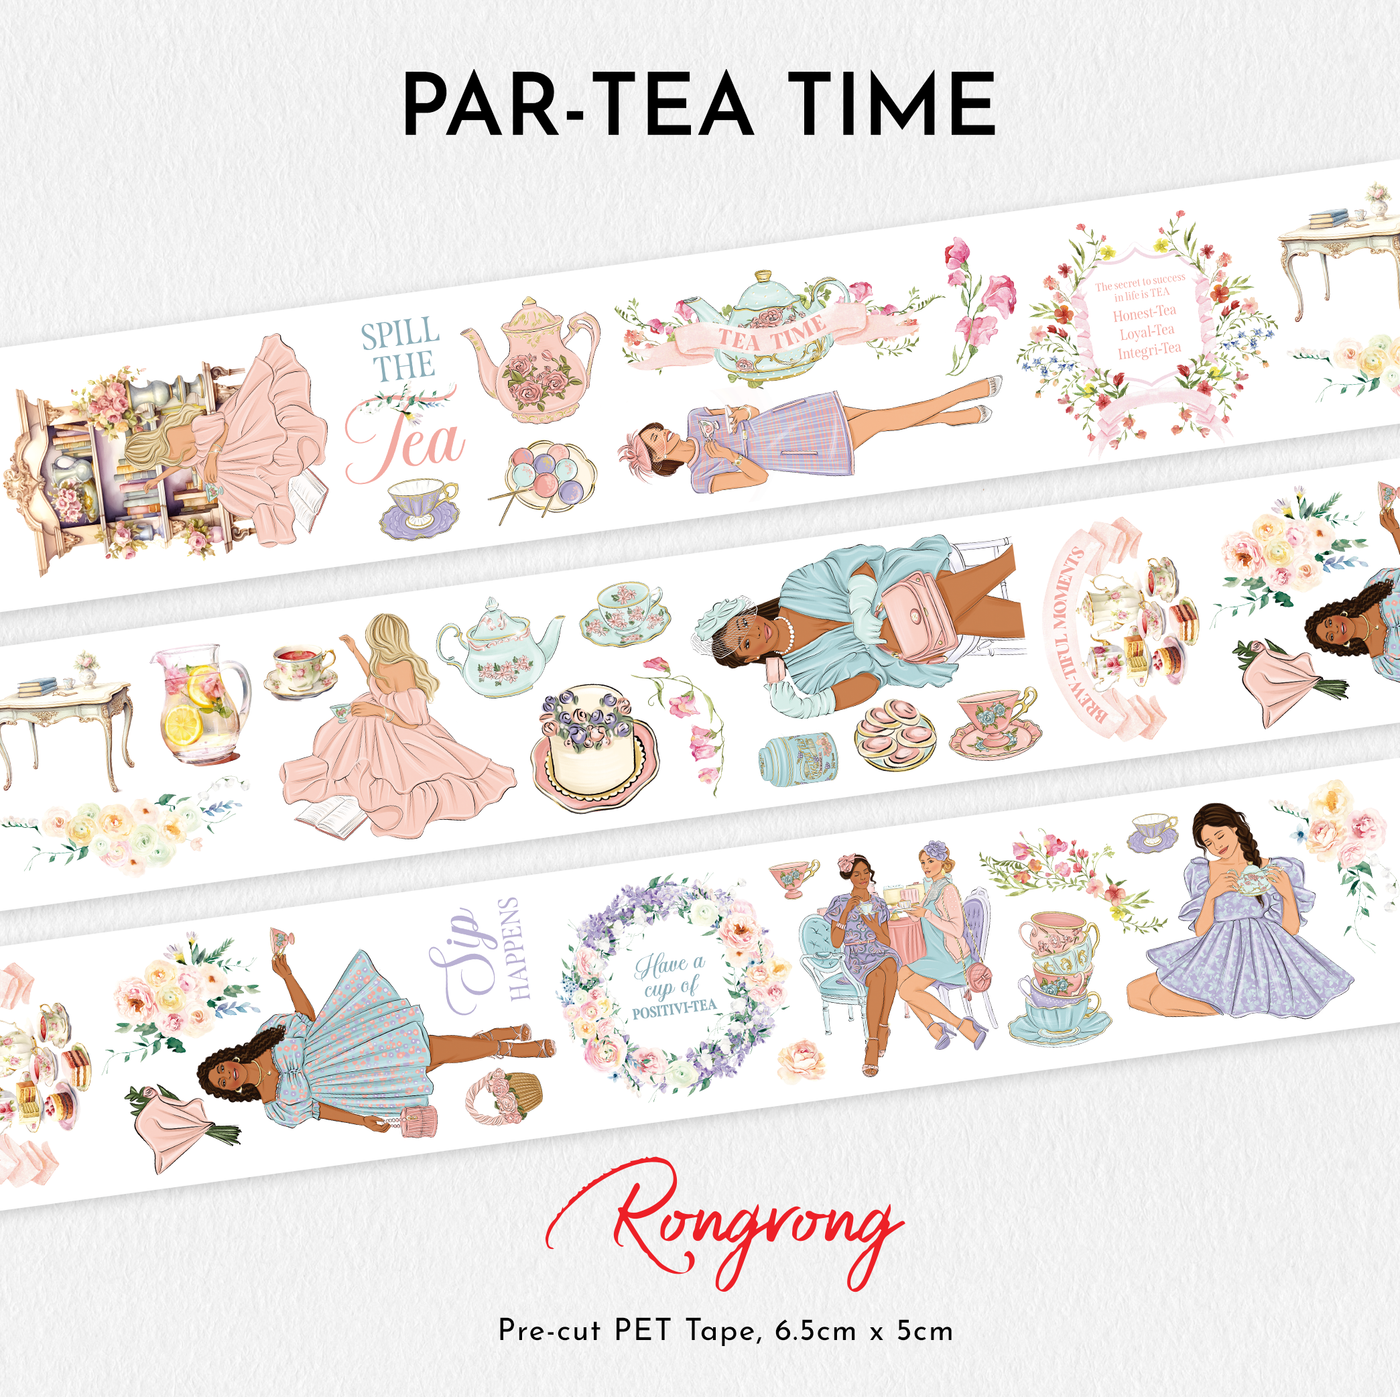 Shop Rongrong Par-Tea Time PET Tape